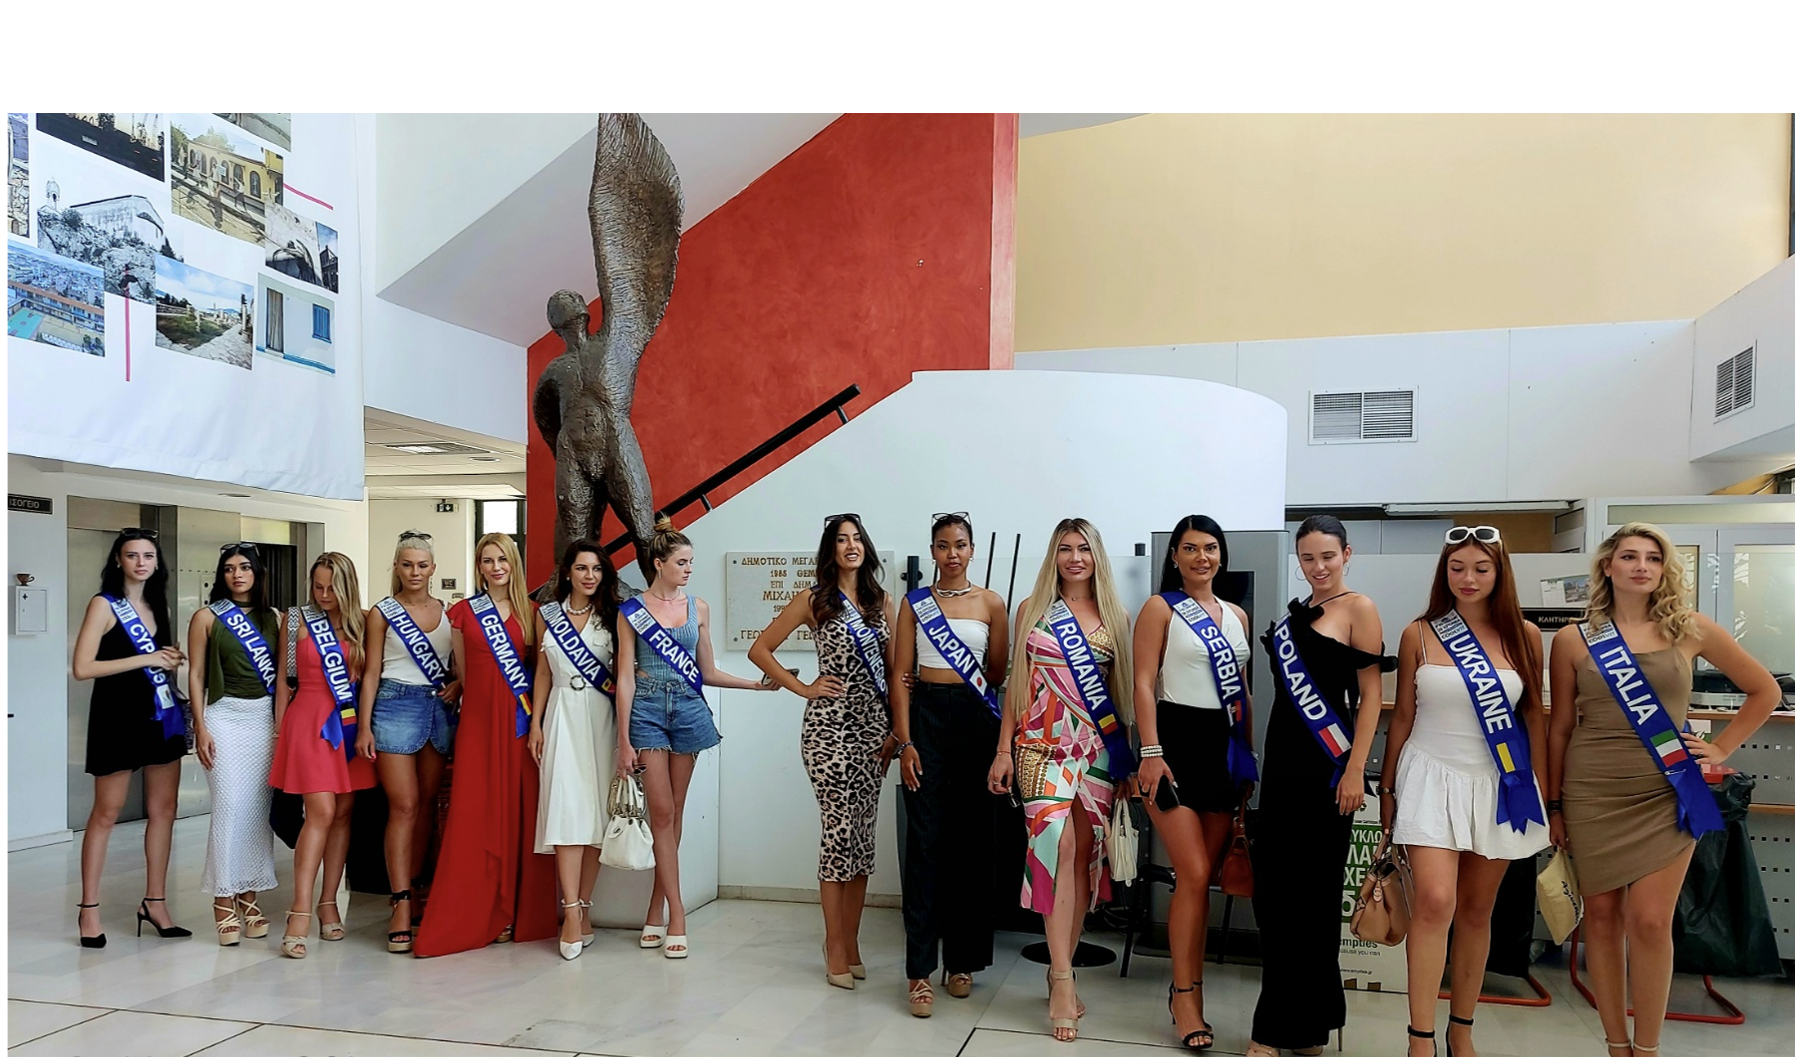 ΔΕΛΤΙΟ ΤΥΠΟΥ Το Δημαρχείο Ελευσίνας επισκέφθηκαν οι υποψήφιες του 28ου διαγωνισμού ομορφιάς Μις Παγκόσμιος Τουρισμός